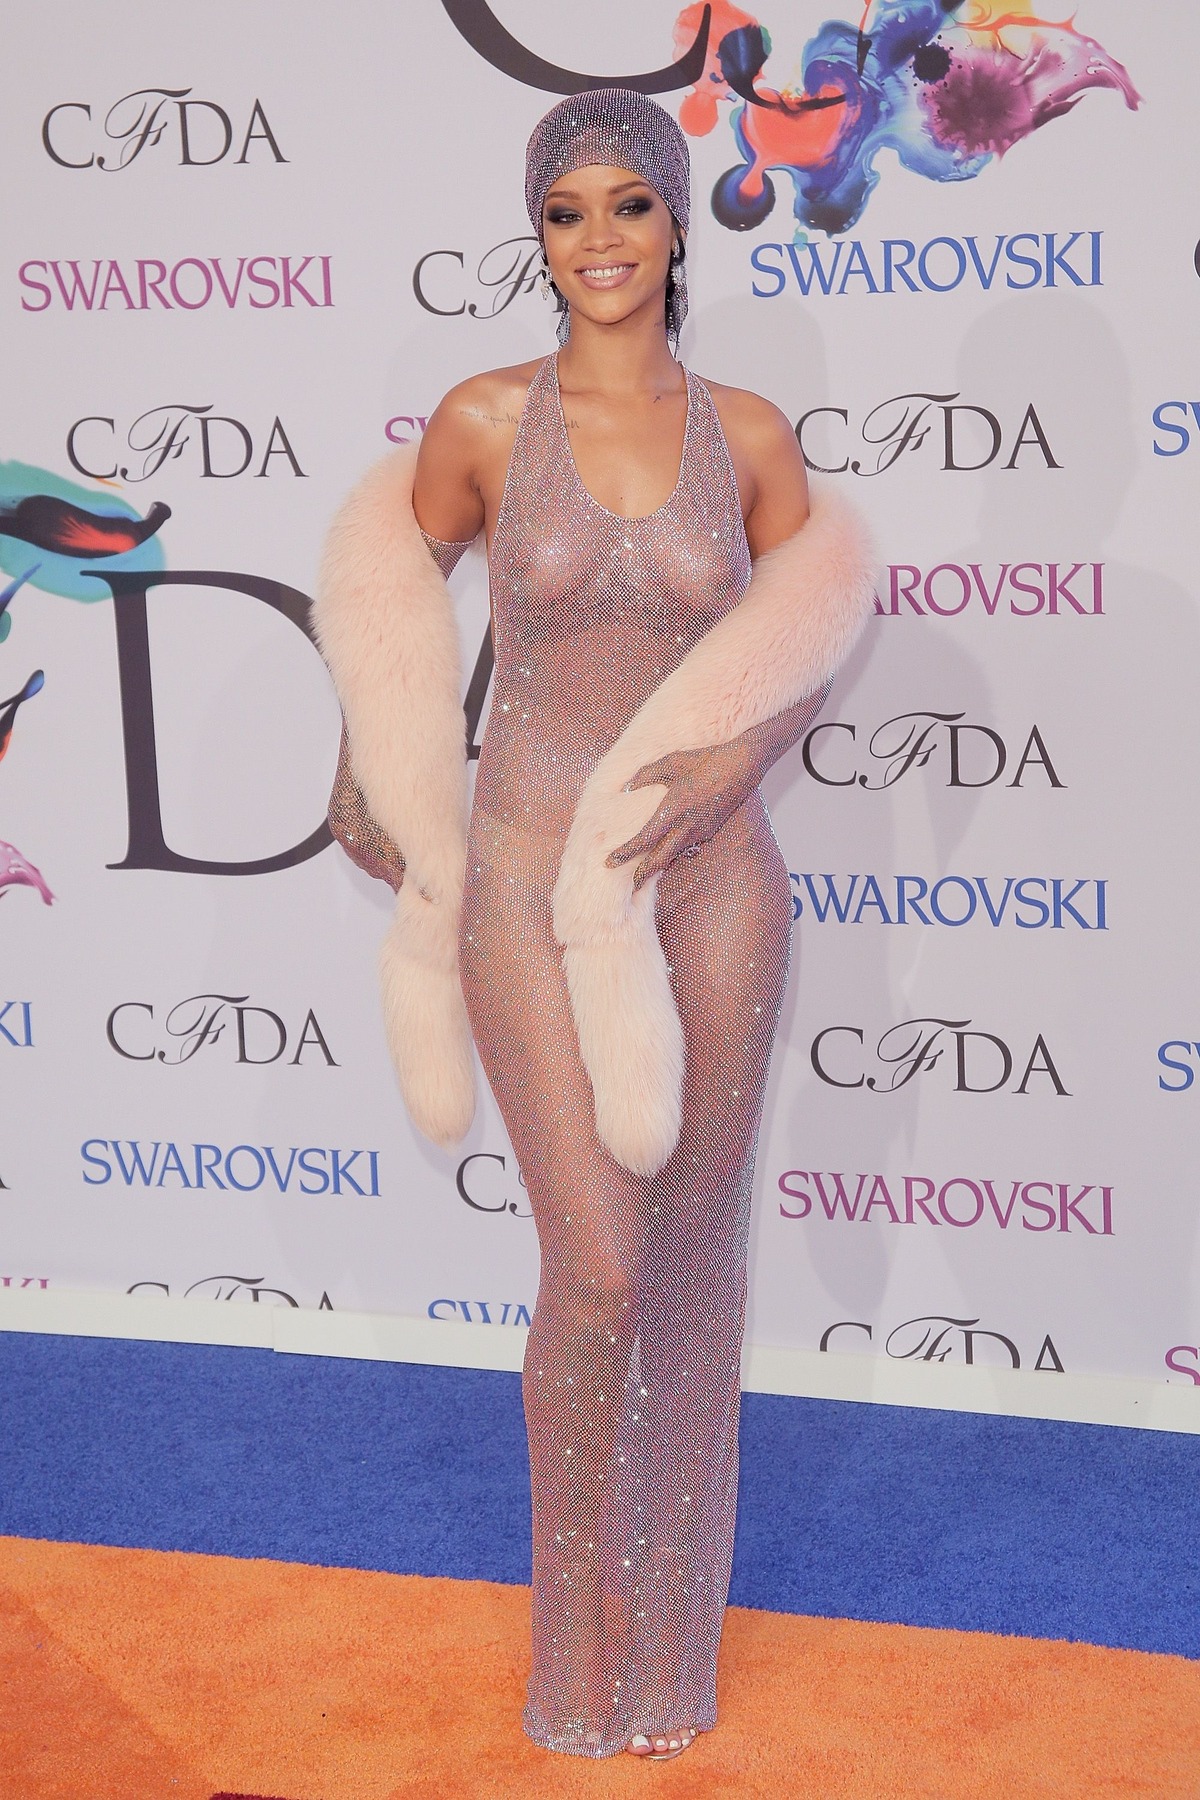 Chiếc váy táo bạo của Adam Selman mà Rihanna diện trong lễ trao giải CFDA 2014 vẫn được đánh giá là một trong những trang phục thảm đỏ đẹp nhất mọi thời đại. Điểm đặc biệt của chiếc váy này nằm ở việc nó được phủ một lớp pha lê Swarovski.